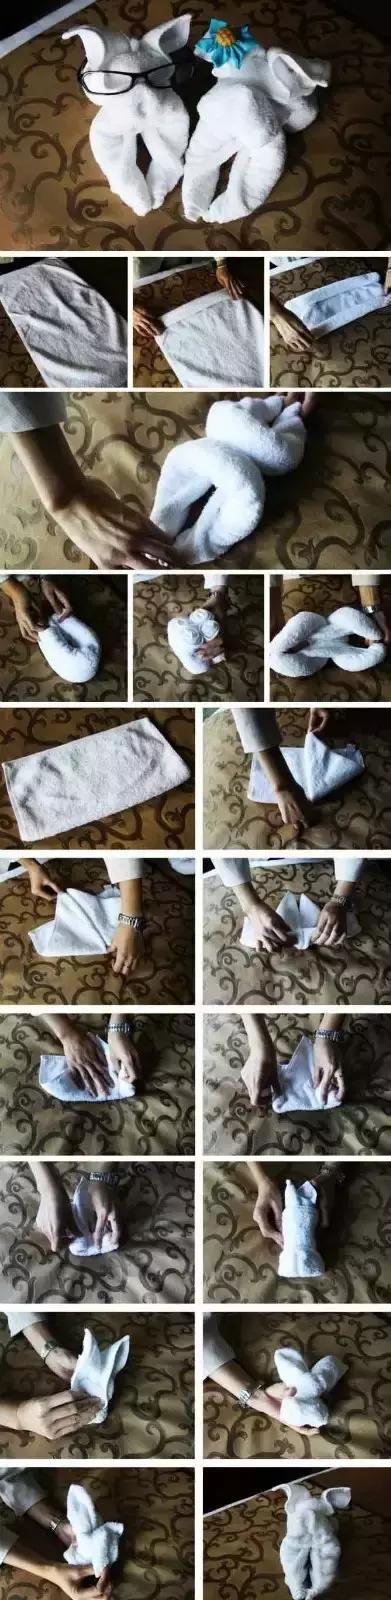 客房毛巾创意折叠教程图片